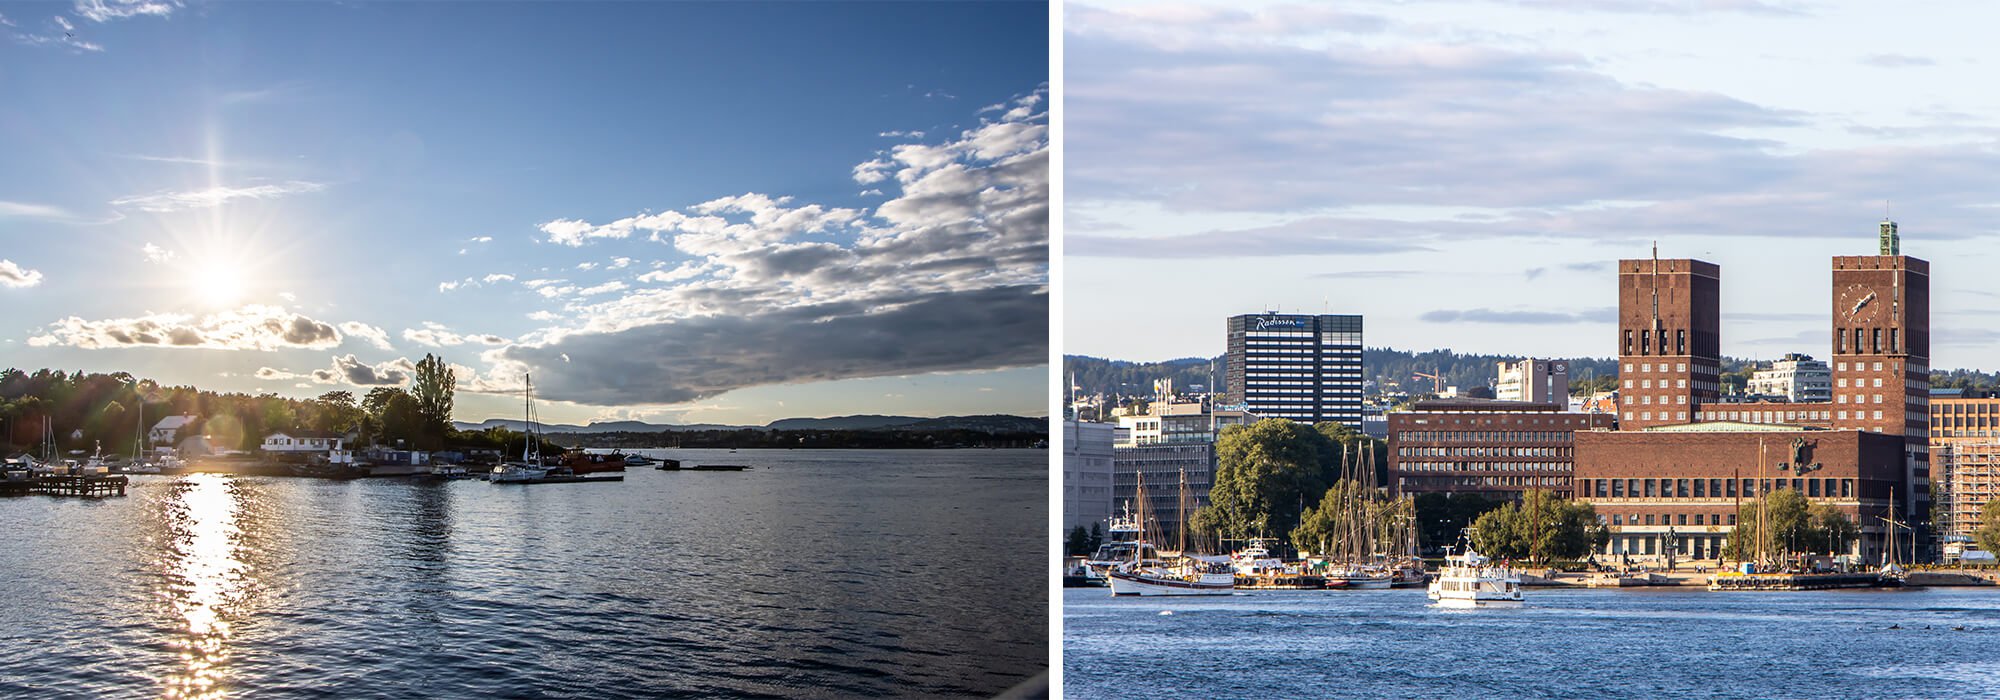 Workation in Norwegen, Fahrt mit den Ruder-Fähren direkt im Oslofjord mit Blick aufs Wasser und das Rathaus von Oslo